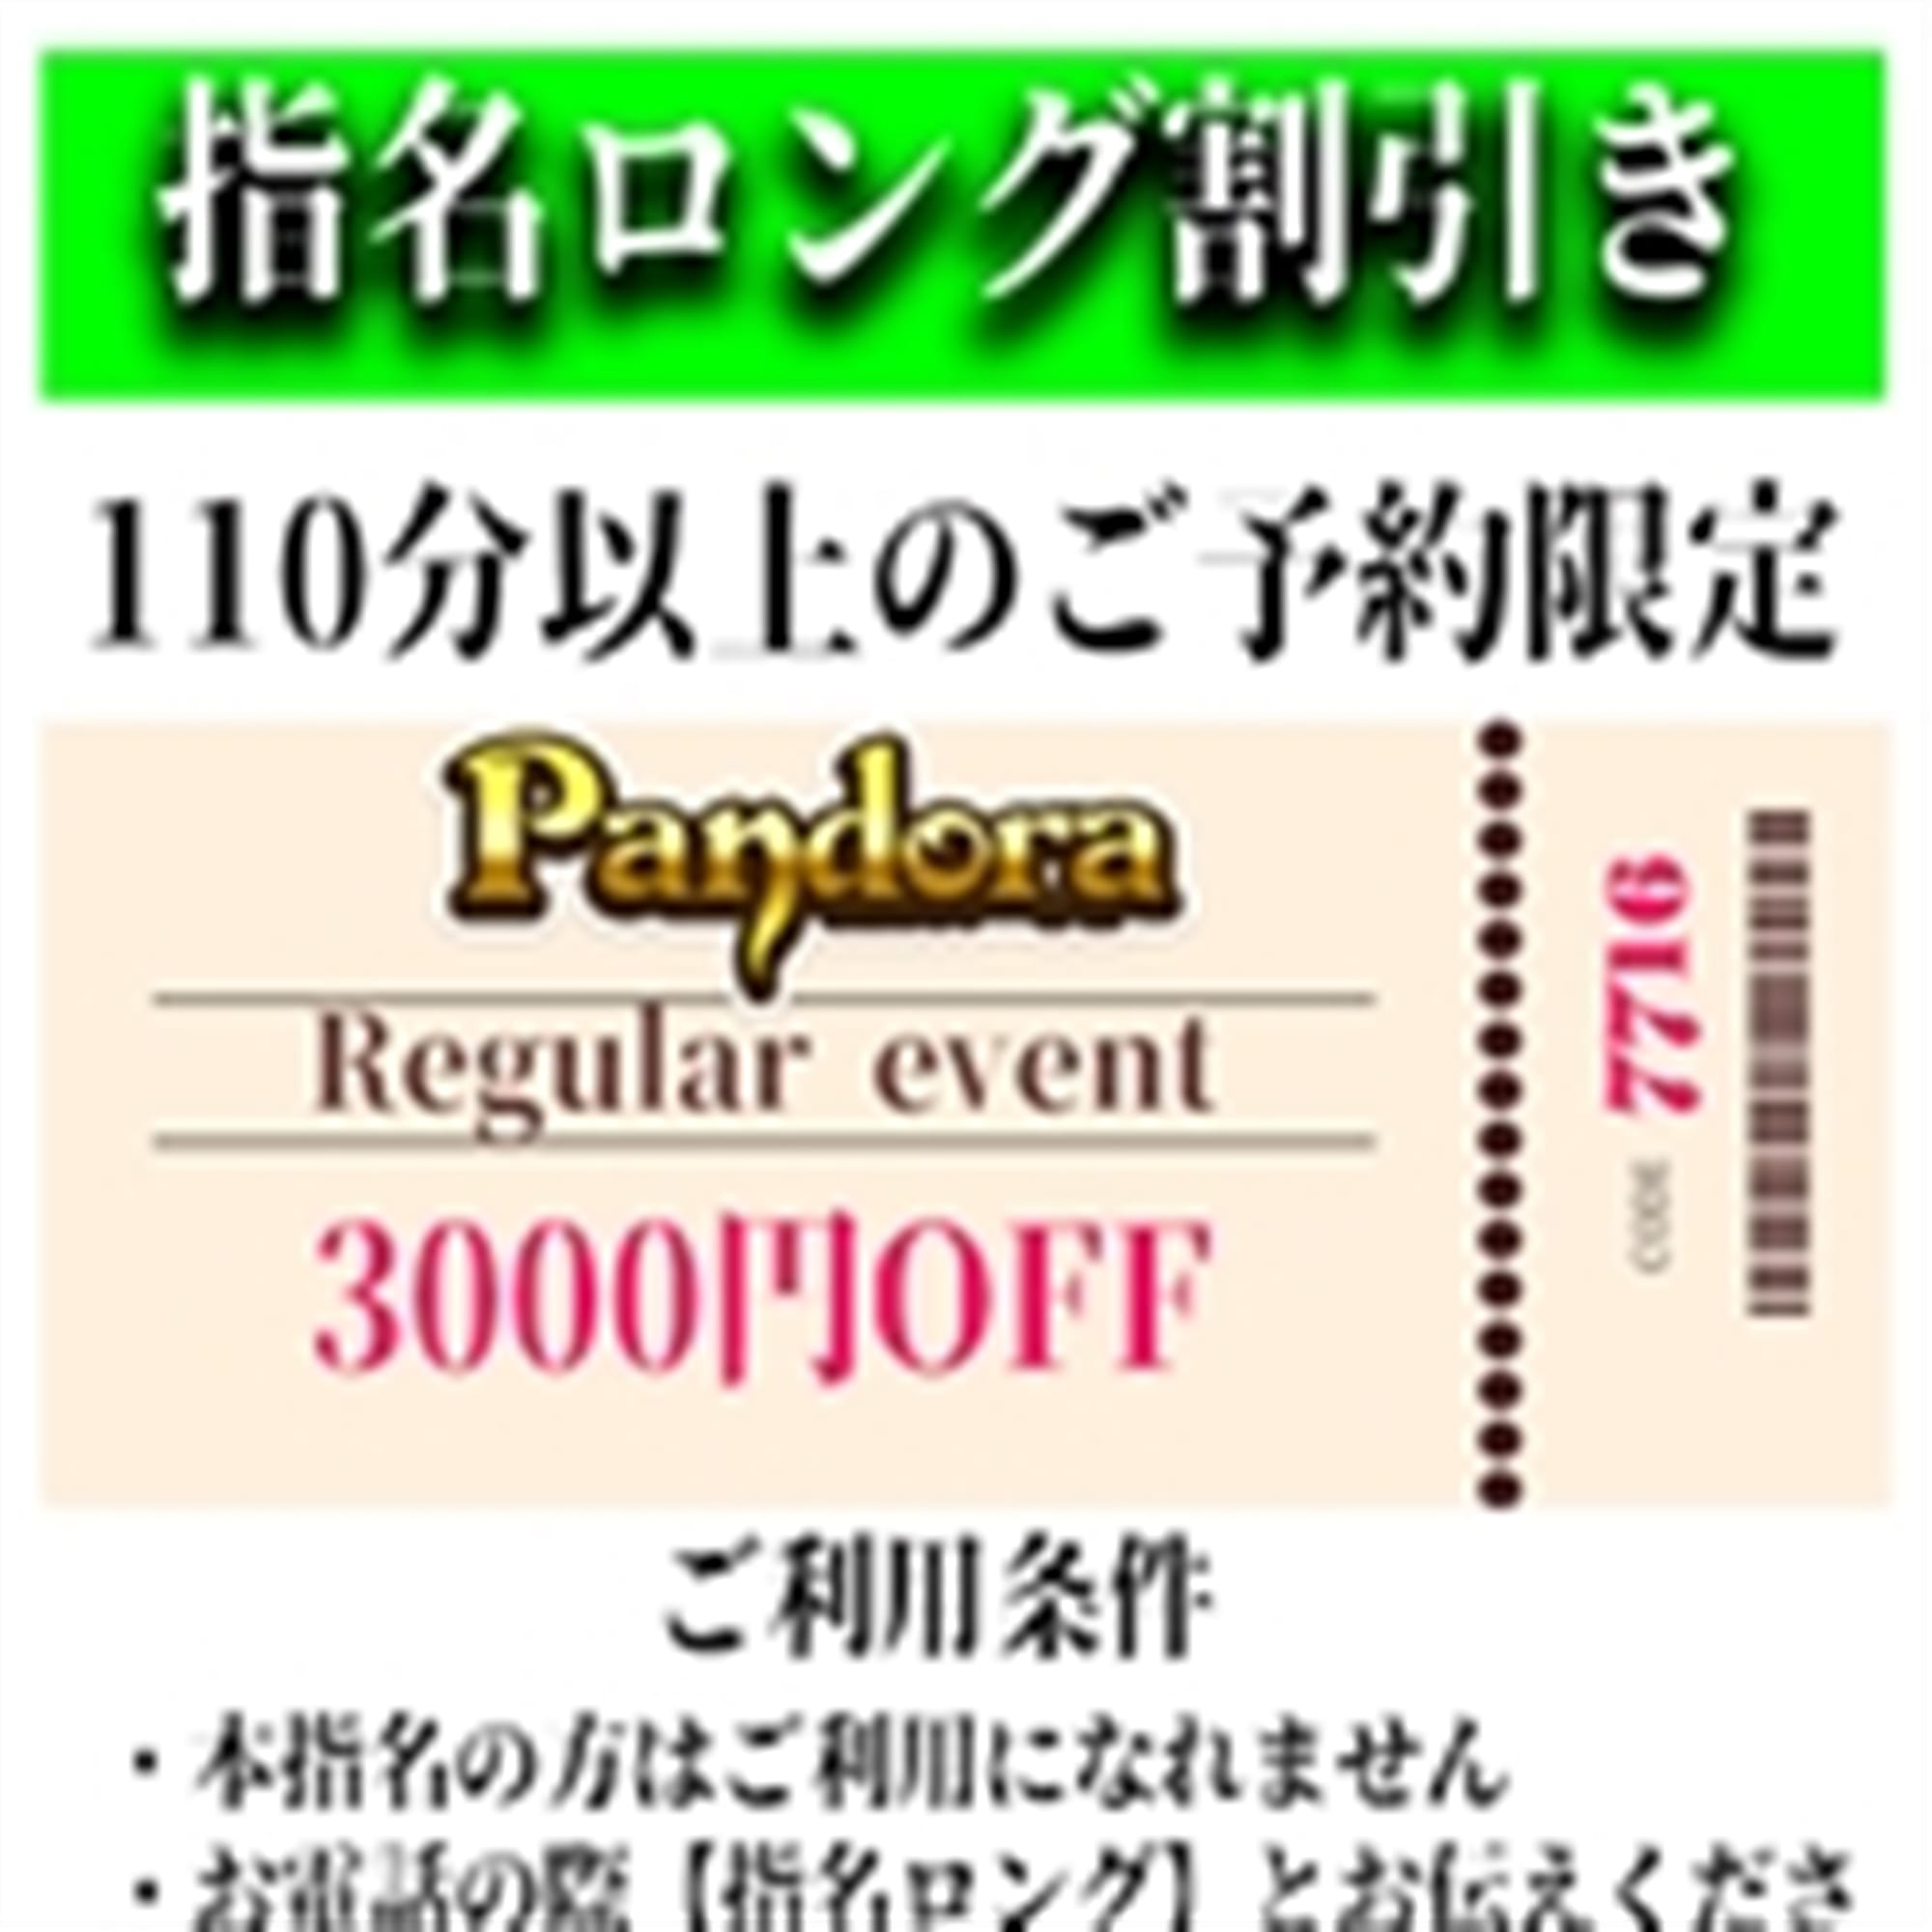 「ご指名のお客様も遊べるロングコース割引」04/27(土) 16:46 | Pandora(パンドラ)新潟のお得なニュース